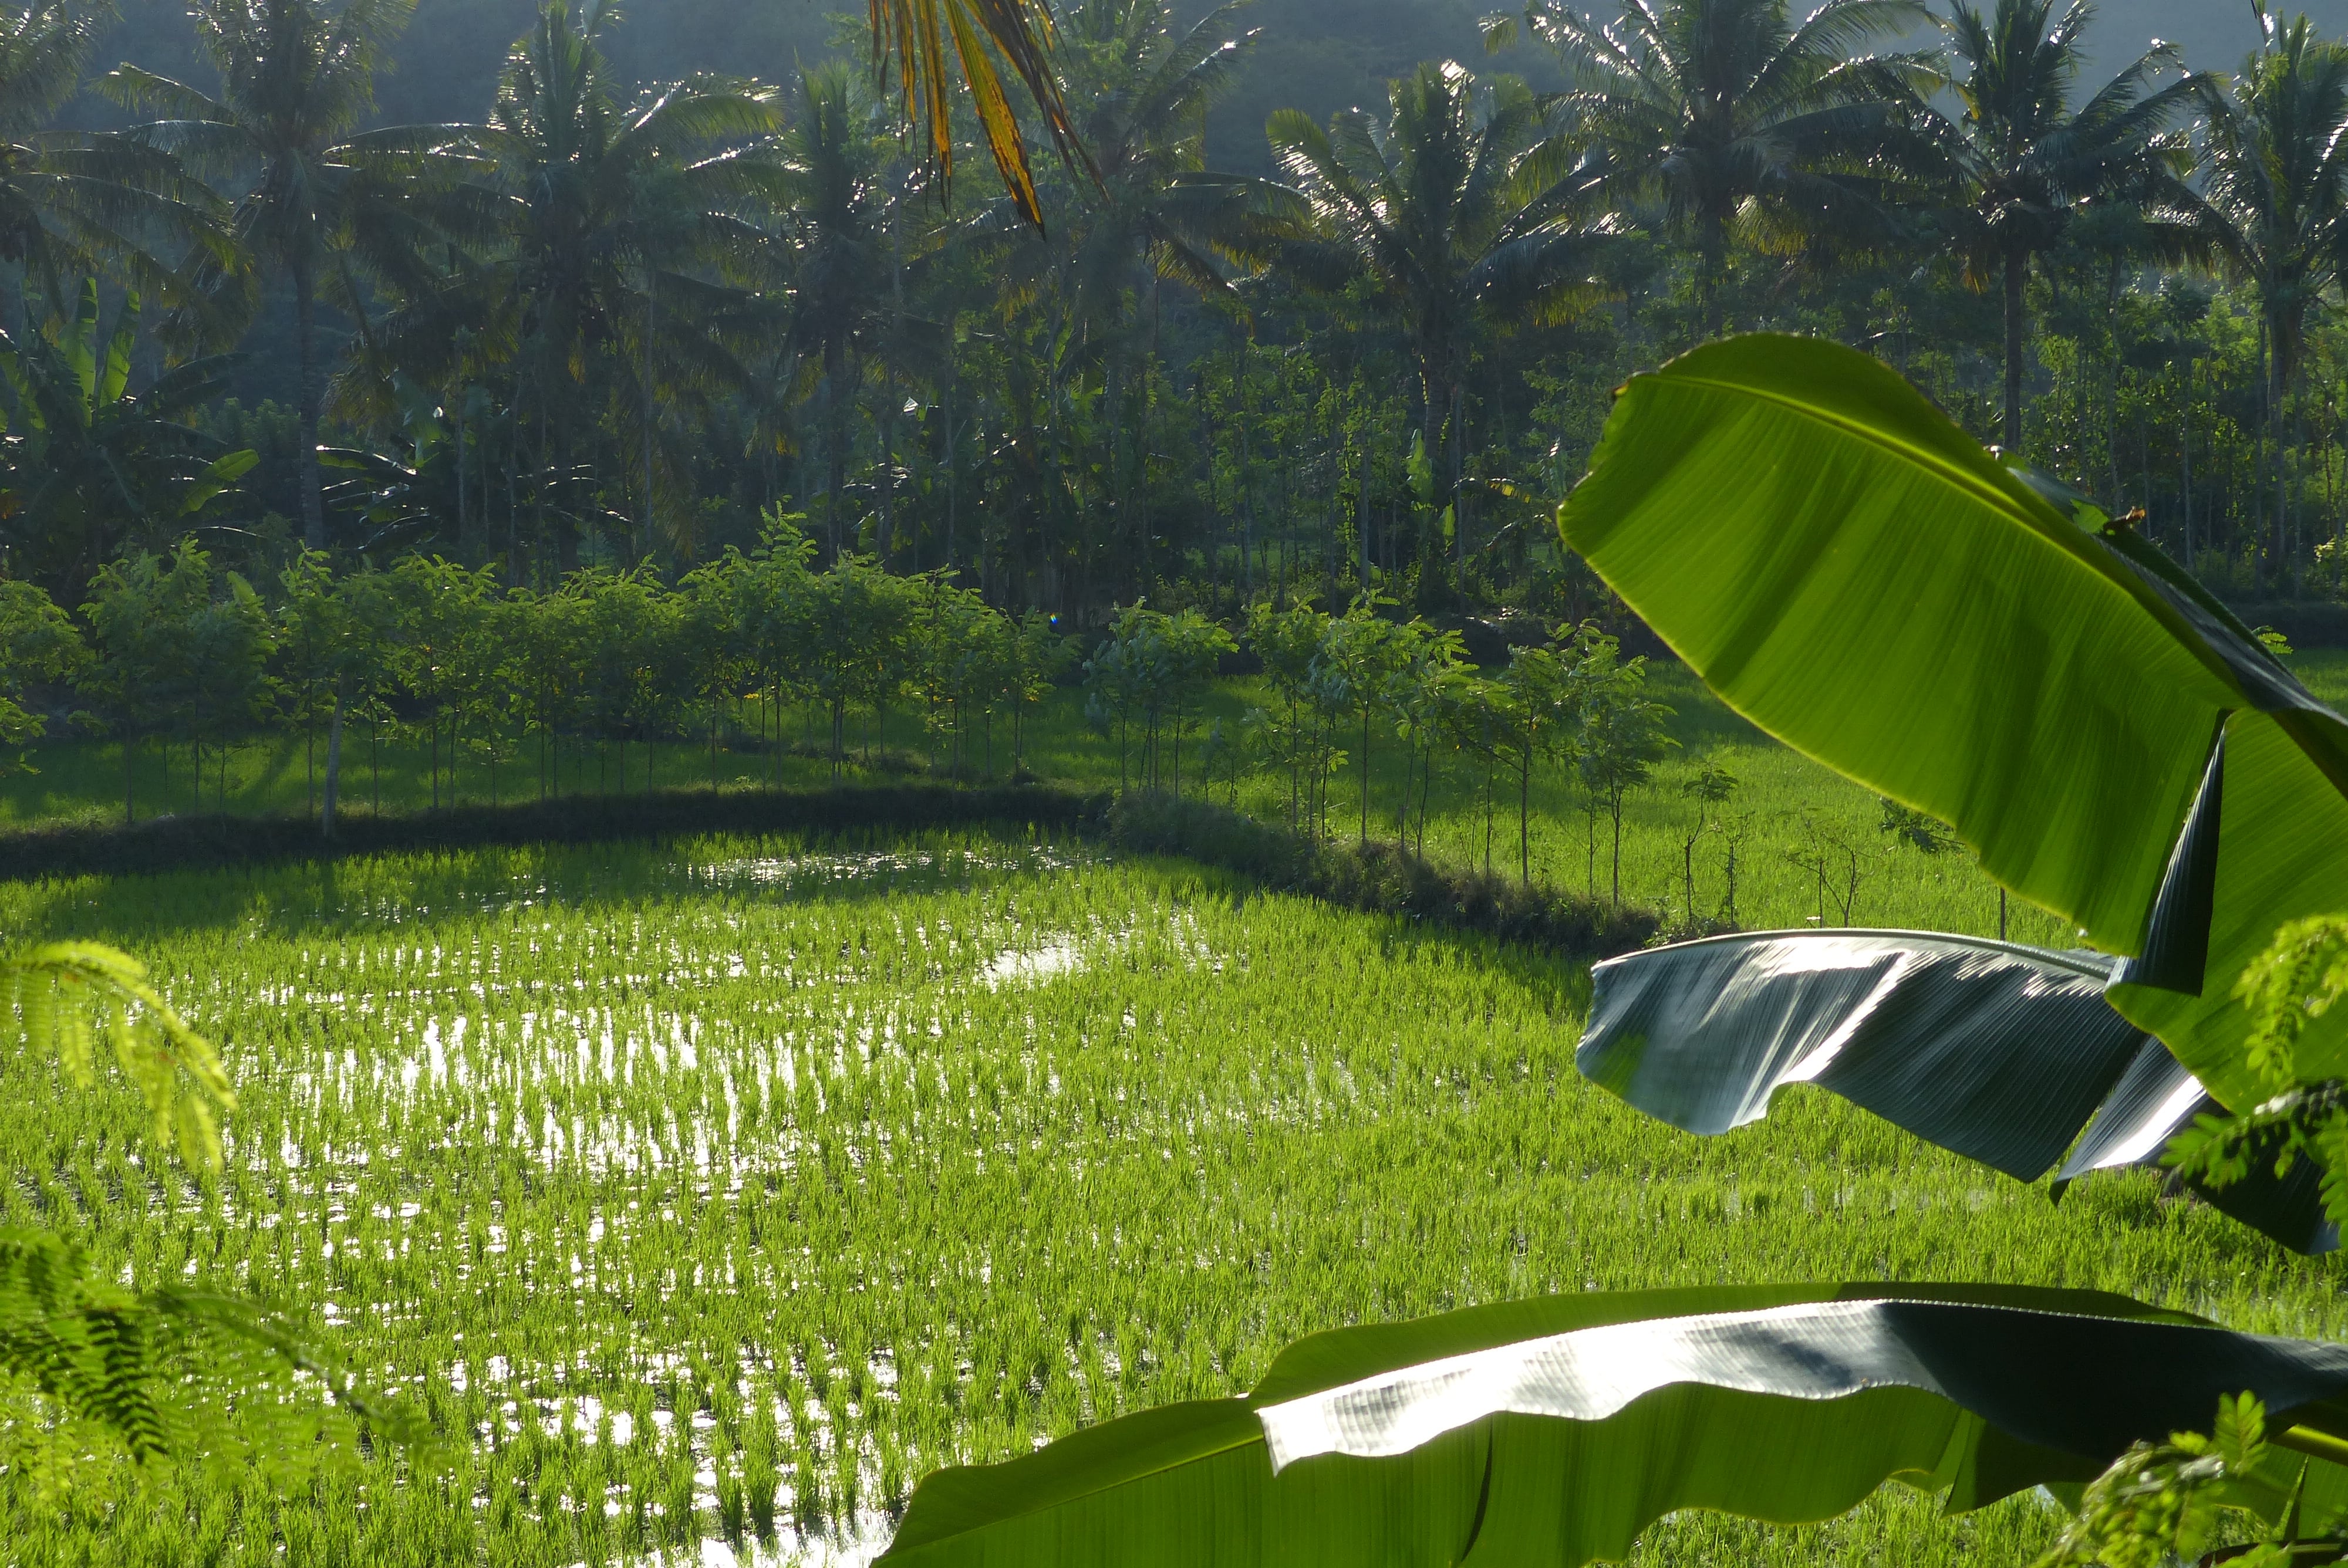 Une rizière près de Kuta Lombok